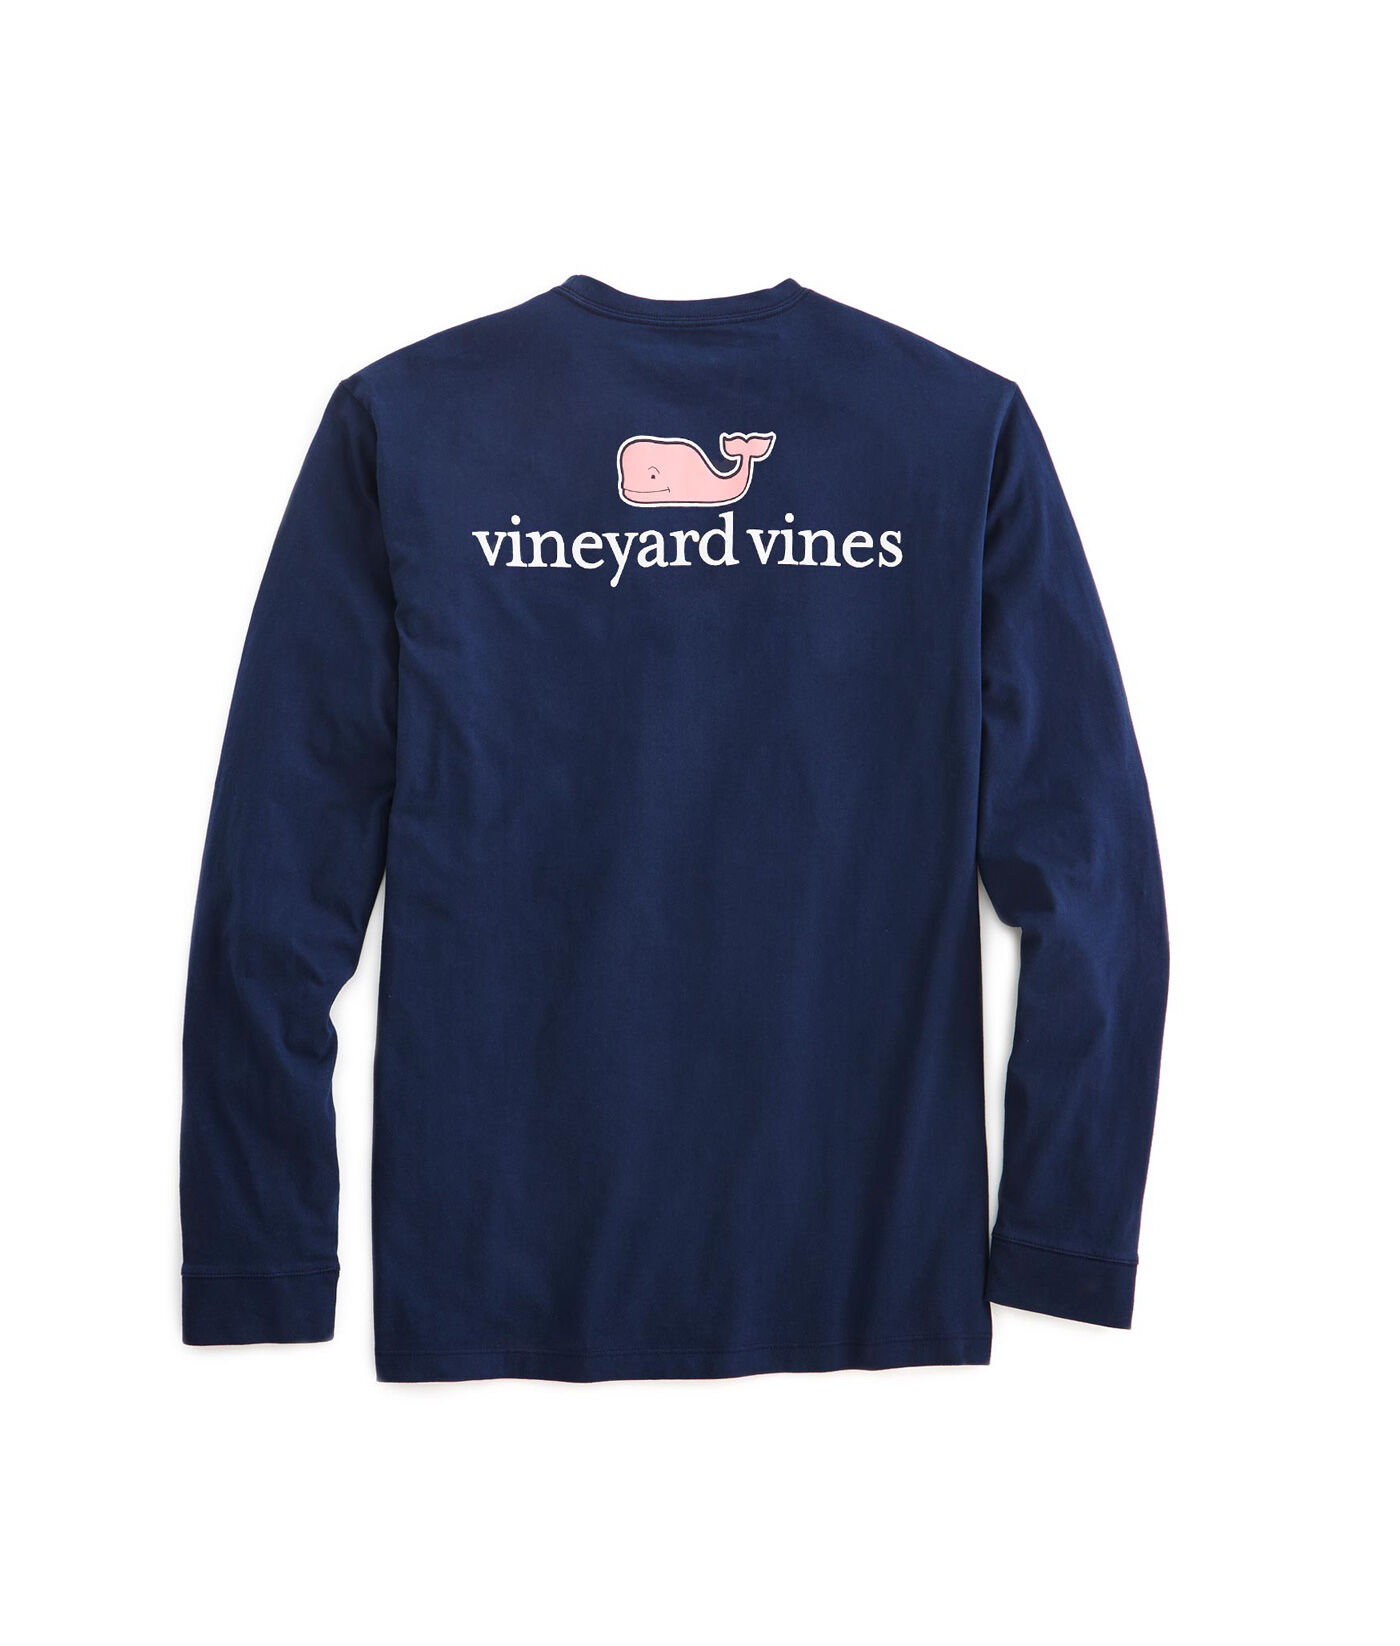 vineyard vines sweatshirts